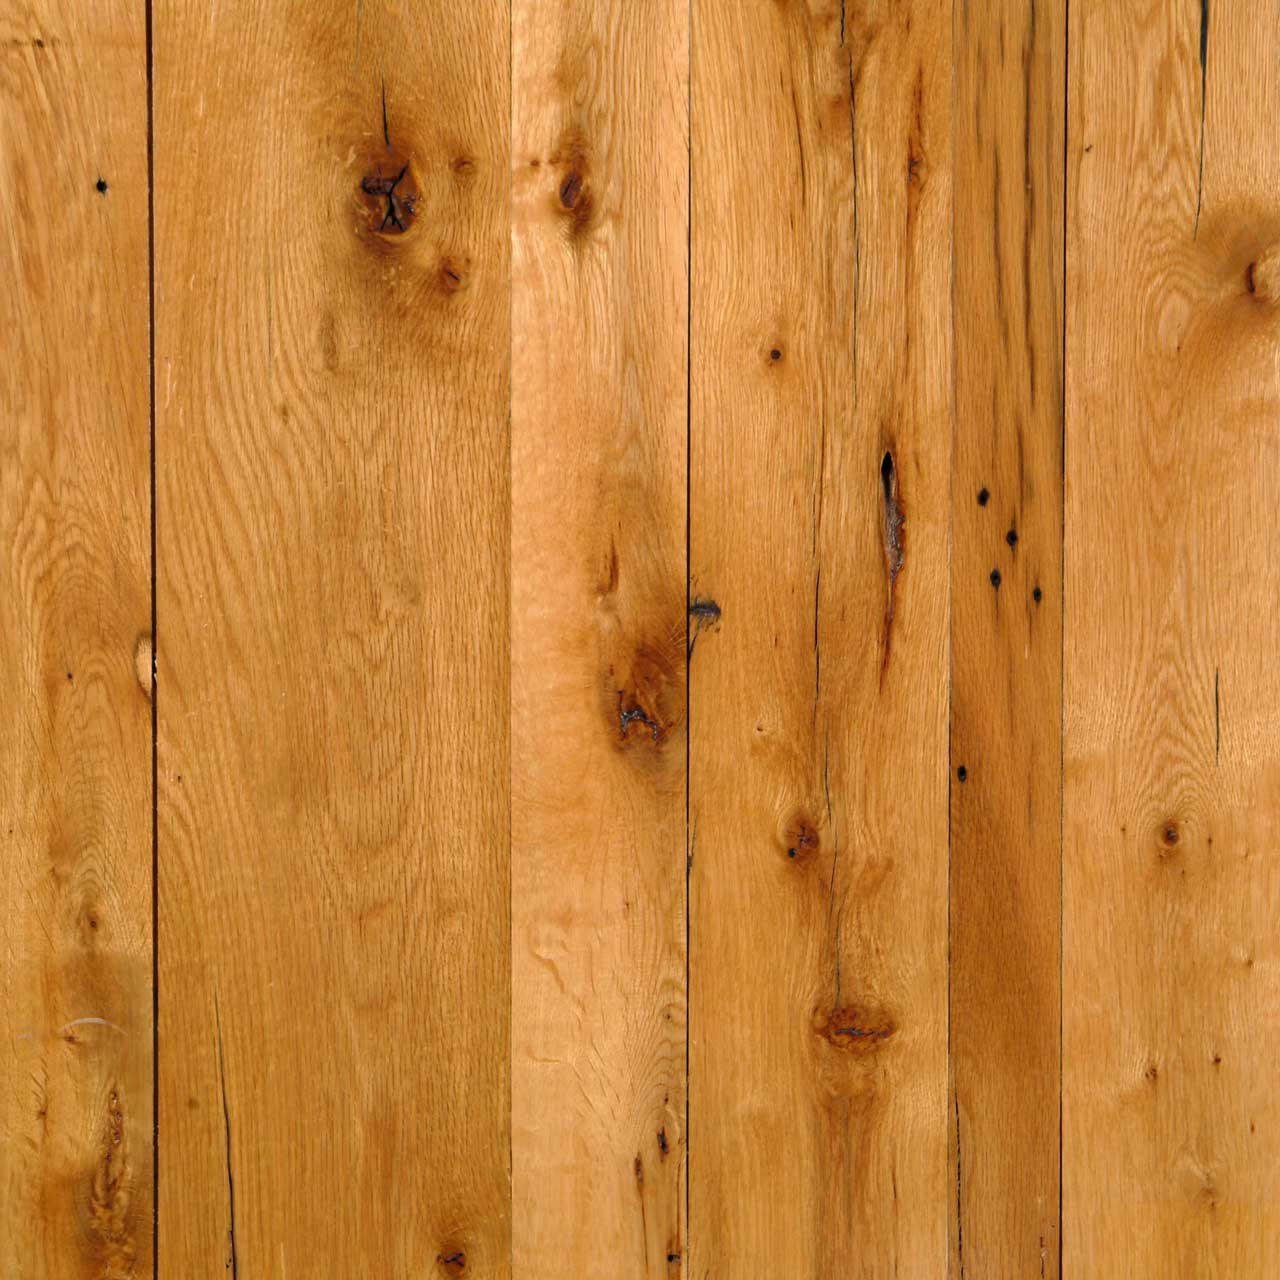 Solid Oak Hardwood Flooring Prices Of Longleaf Lumber Reclaimed Red White Oak Wood In Reclaimed White Oak Wood Flooring